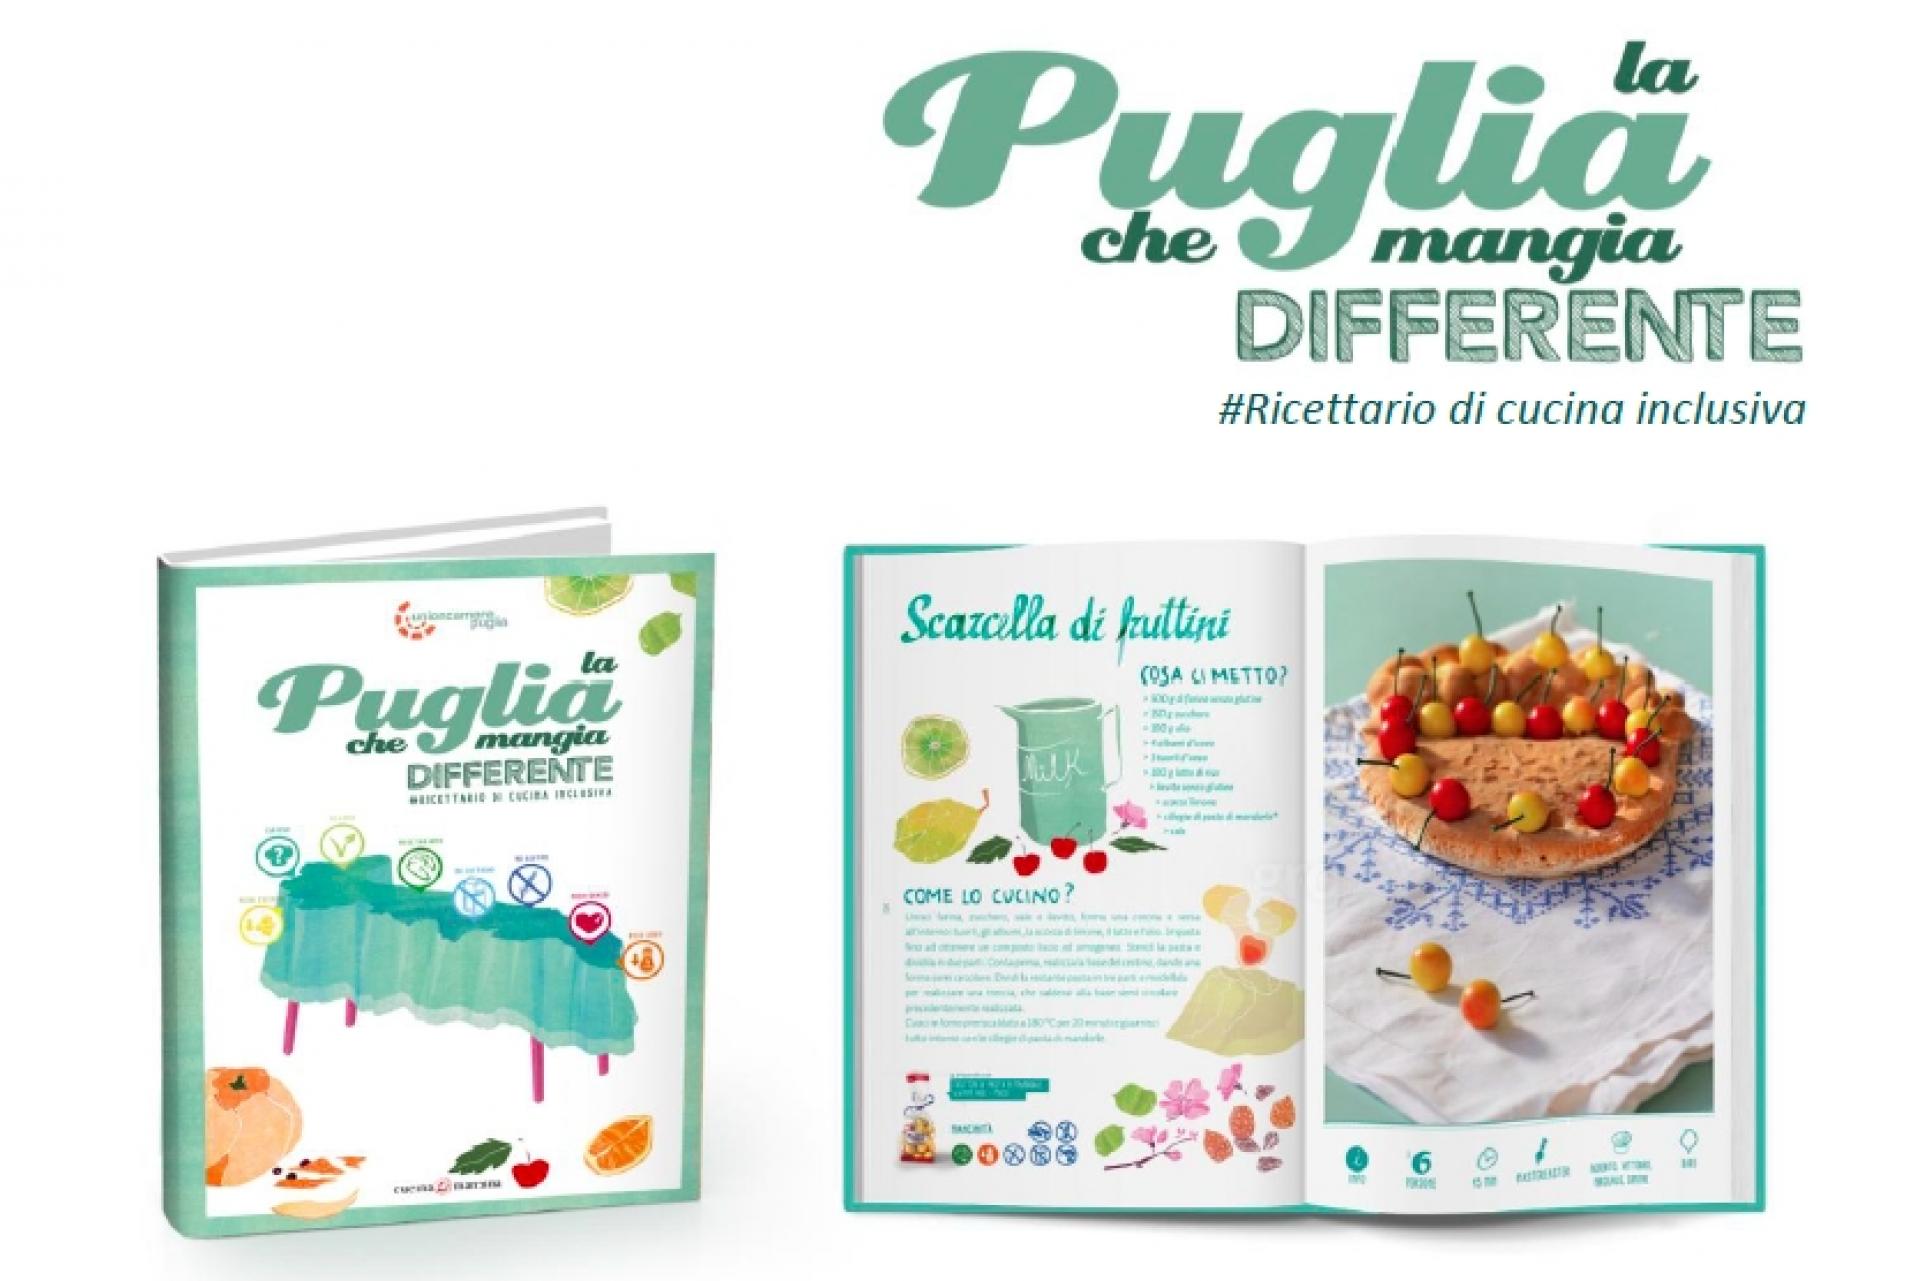 La Puglia che mangia differente: un ricettario polifonico dedicato alle diversità alimentari